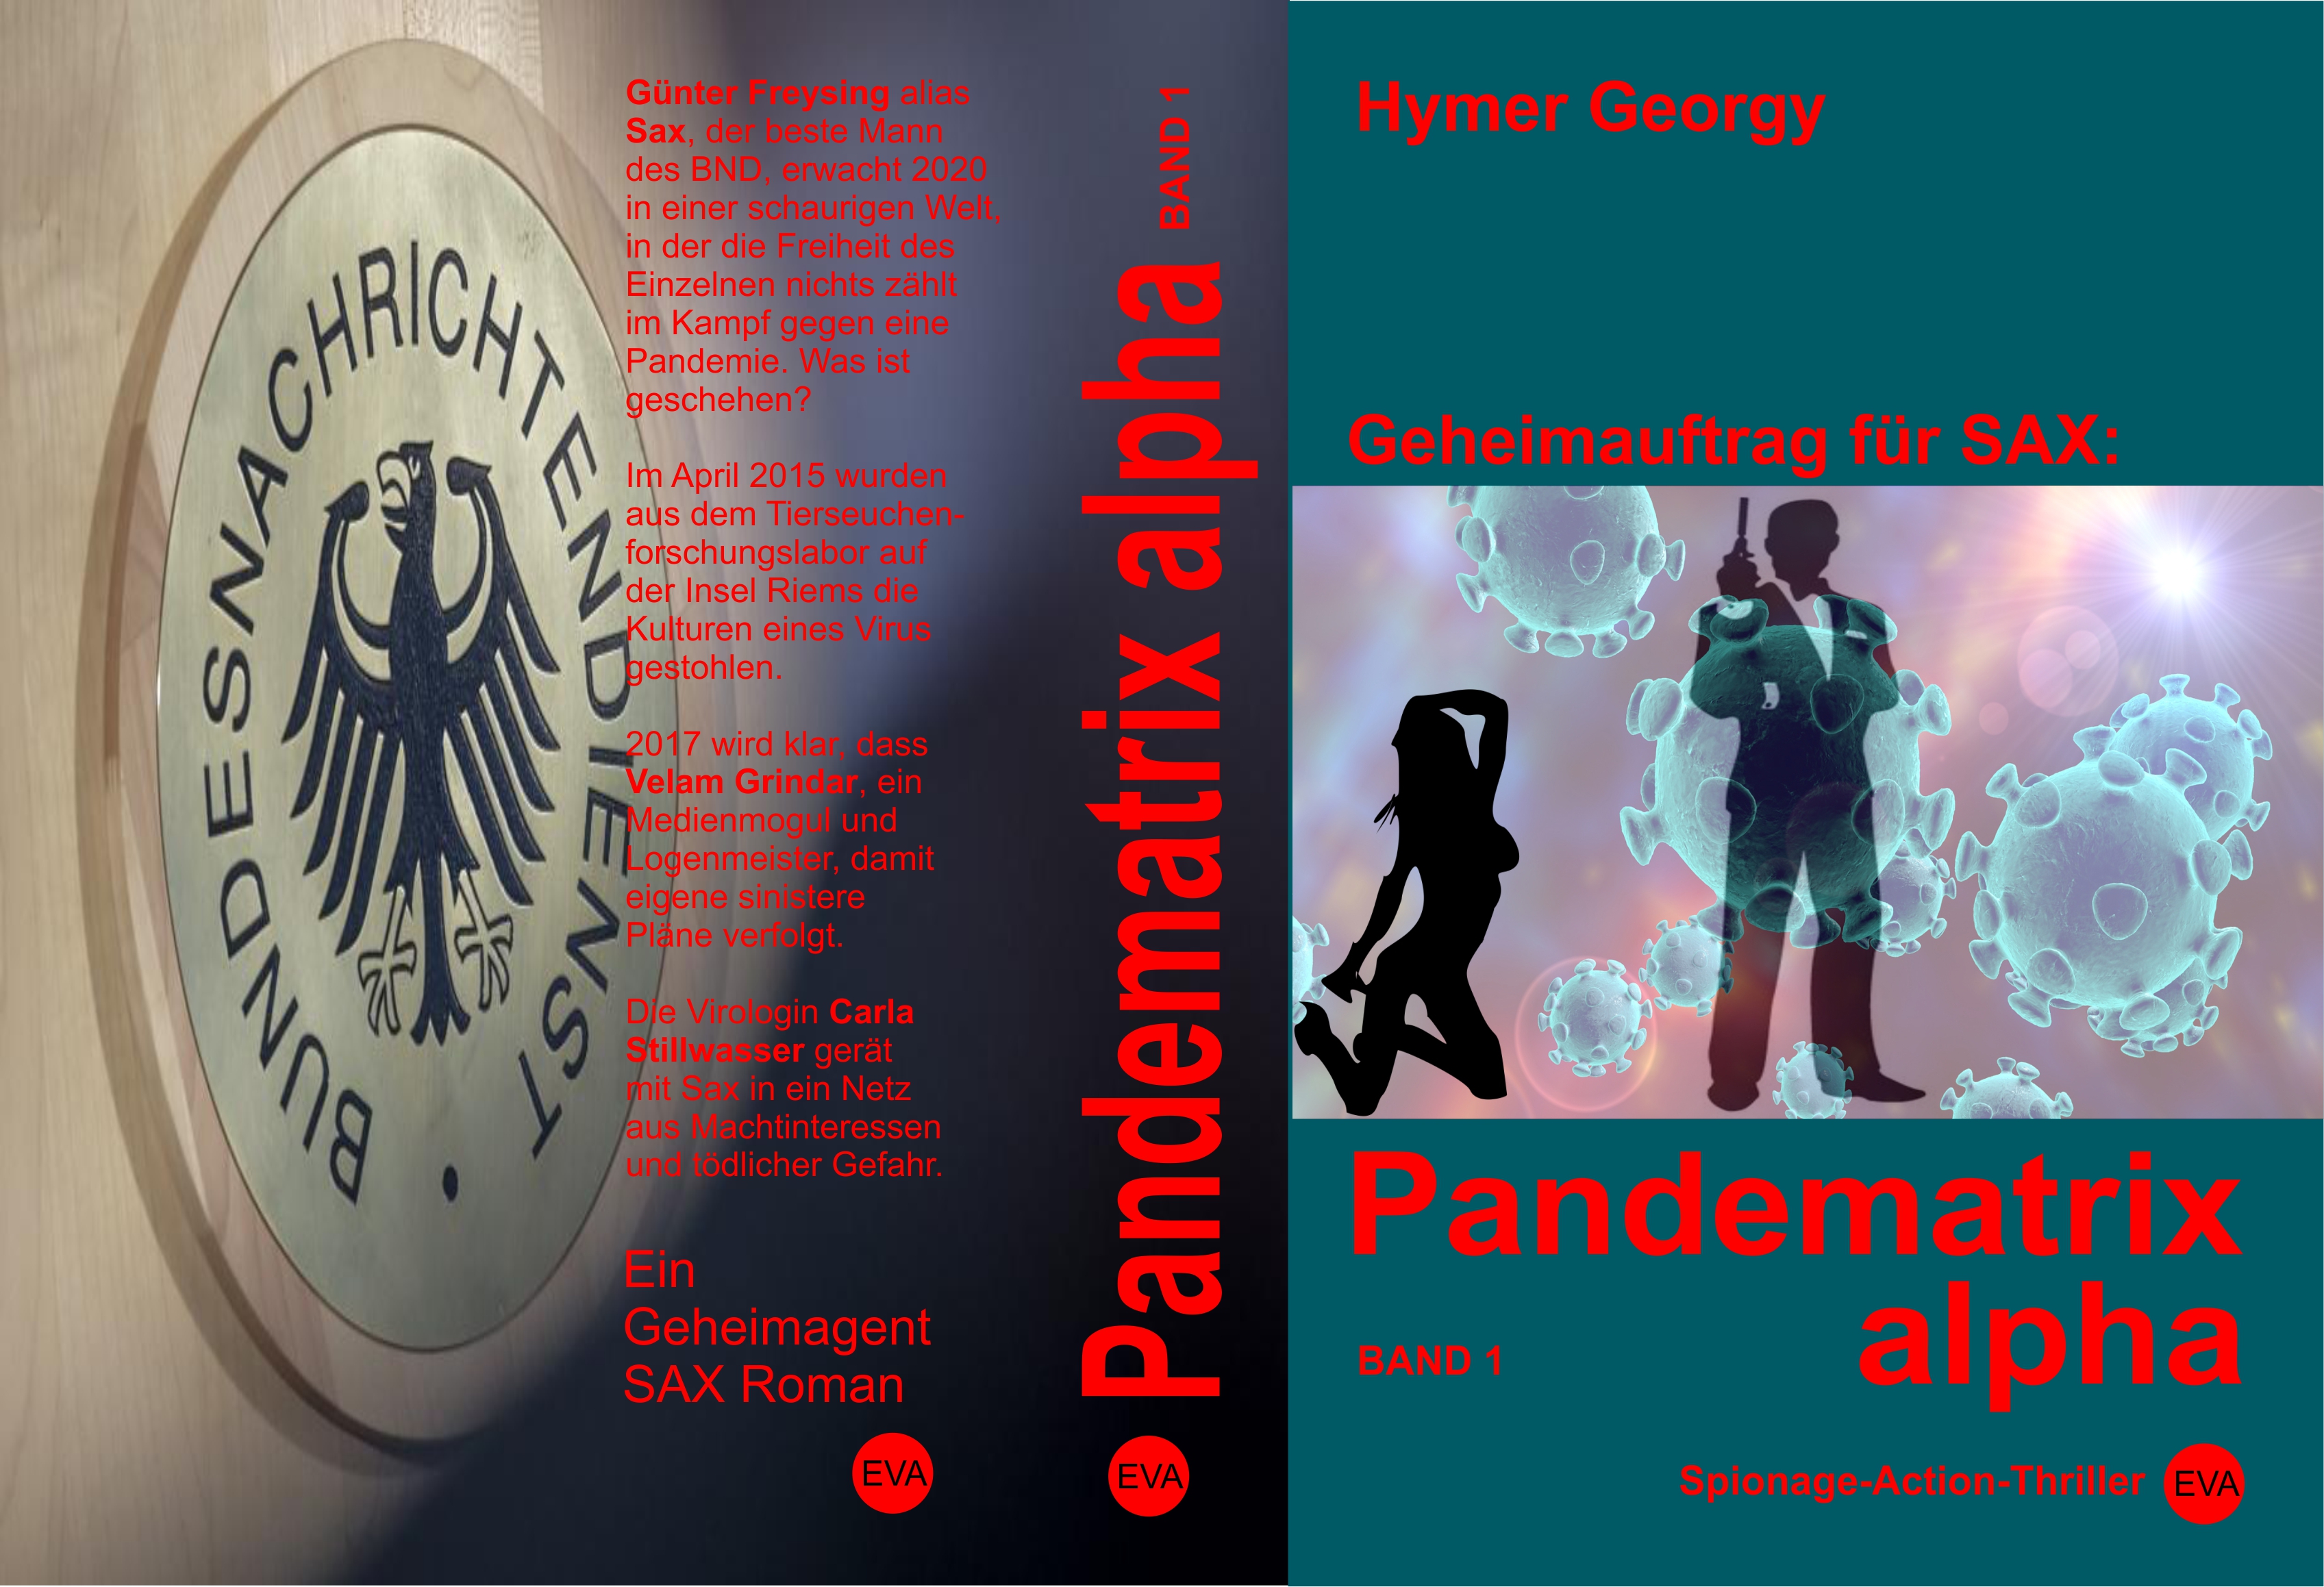 Pandematrix Alpha (1)
Geheimauftrag für Sax.